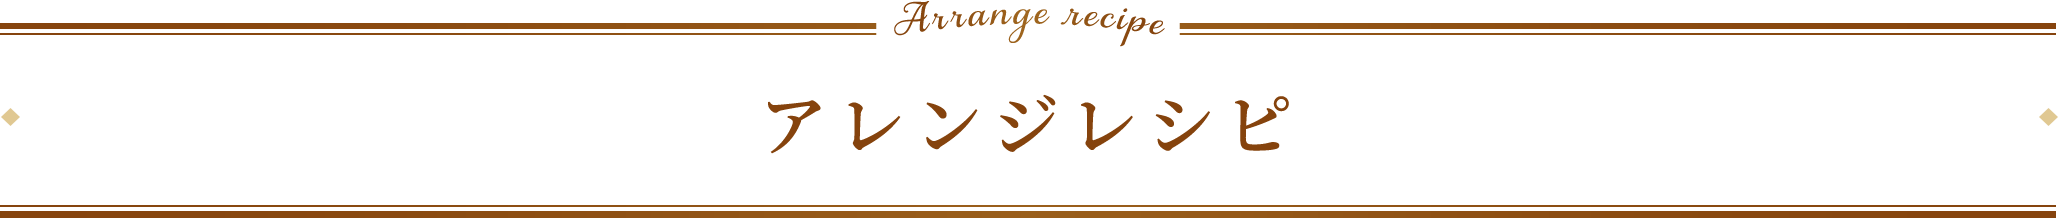 アレンジレシピ